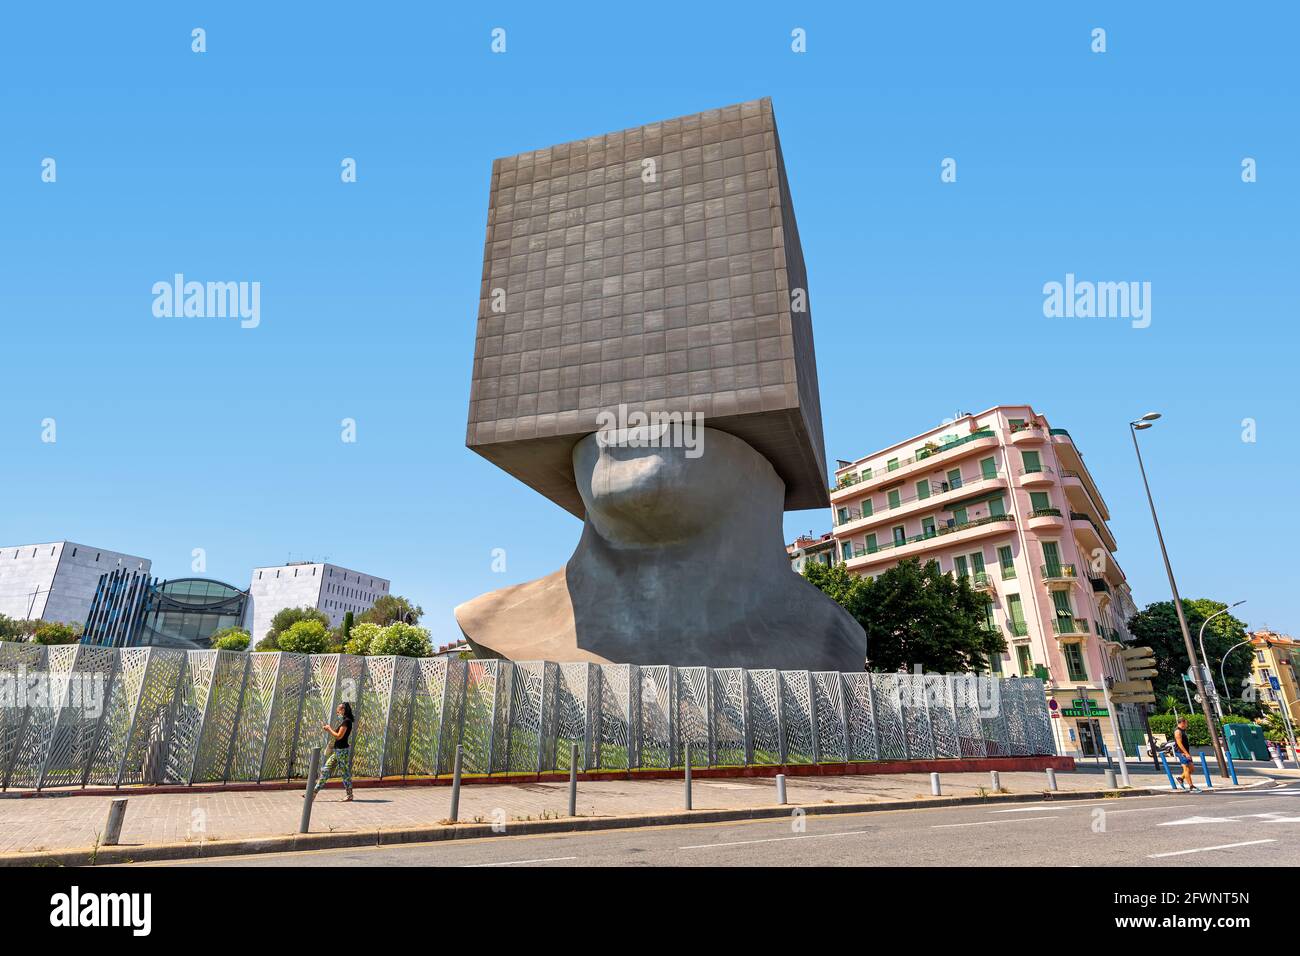 Vue sur la tête carrée sculpture vivante monumentale à Nice, France. Banque D'Images